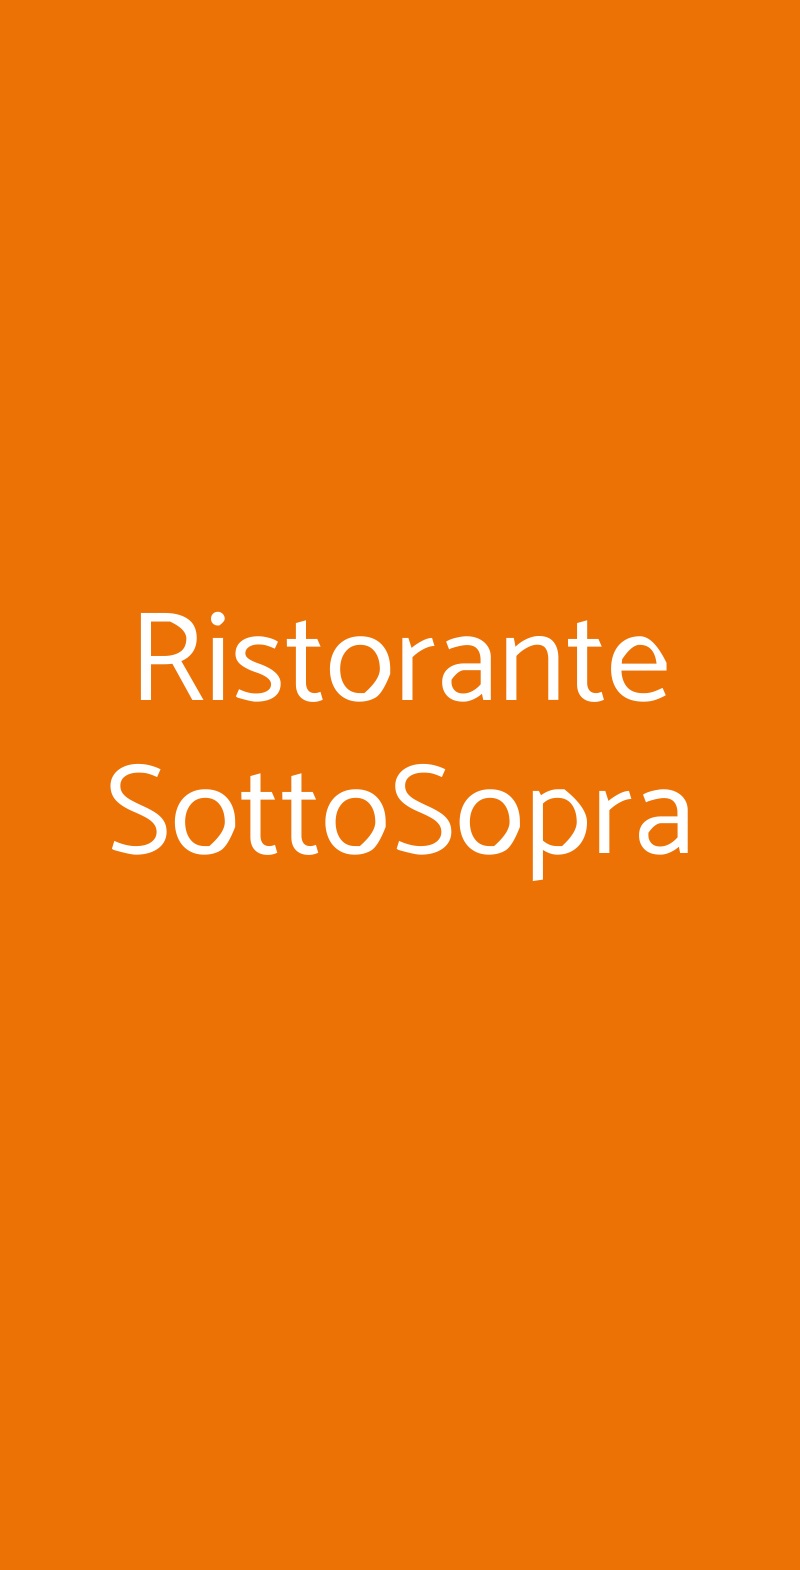 Ristorante SottoSopra Milano menù 1 pagina